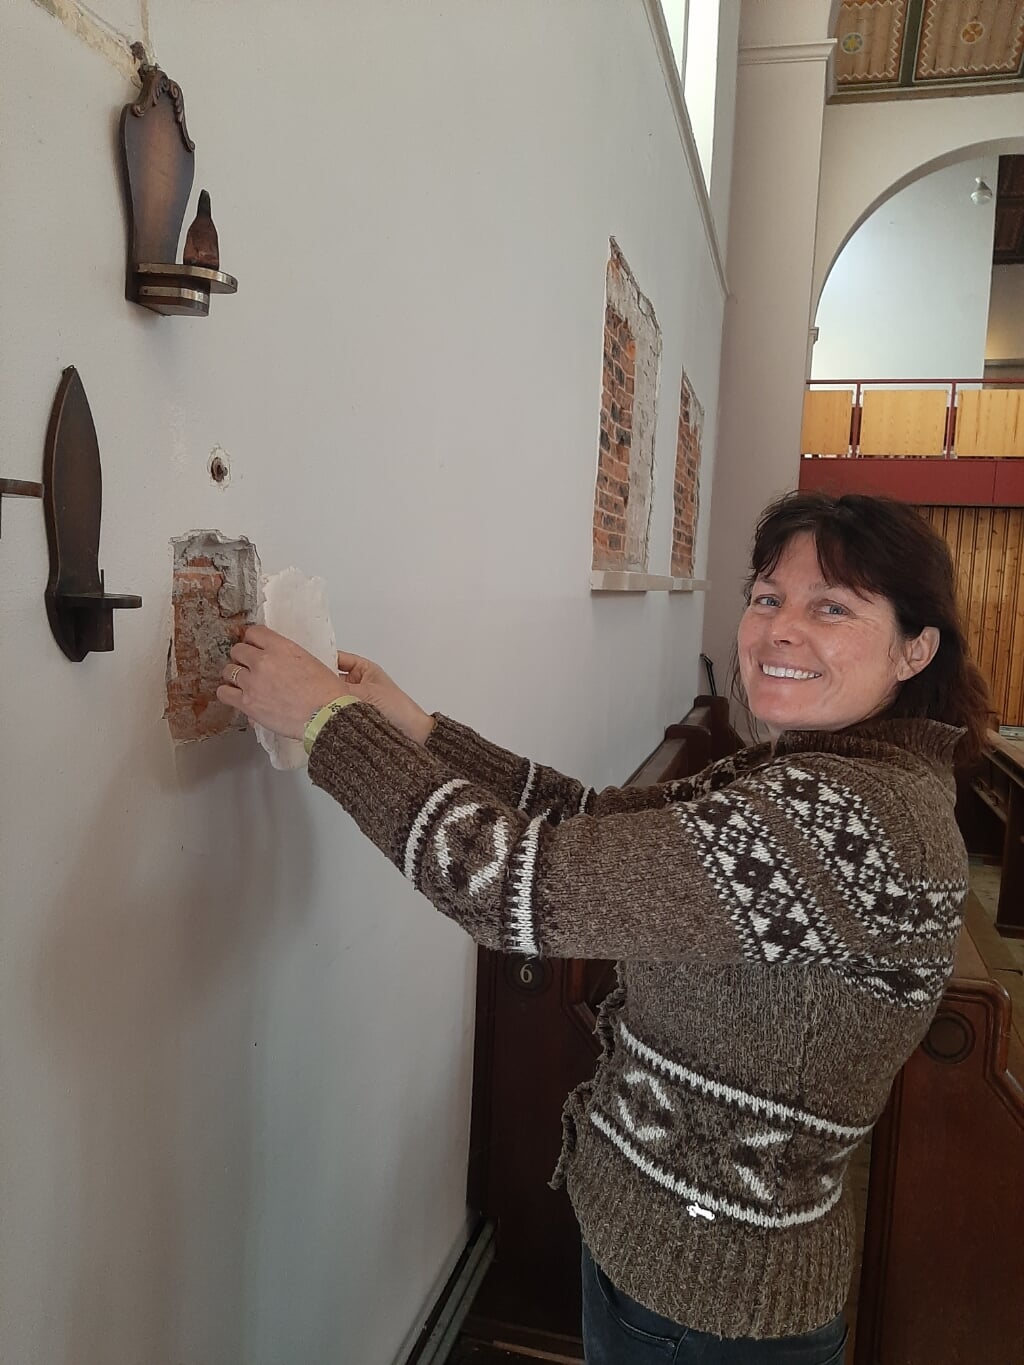 Kunstenares Danielle van Assema-Vet heeft de voormalige RK-kerk Onze Lieve Vrouw Geboorte en de begane grond van het parochiehuis als atelierruimte ter beschikking gekregen. 